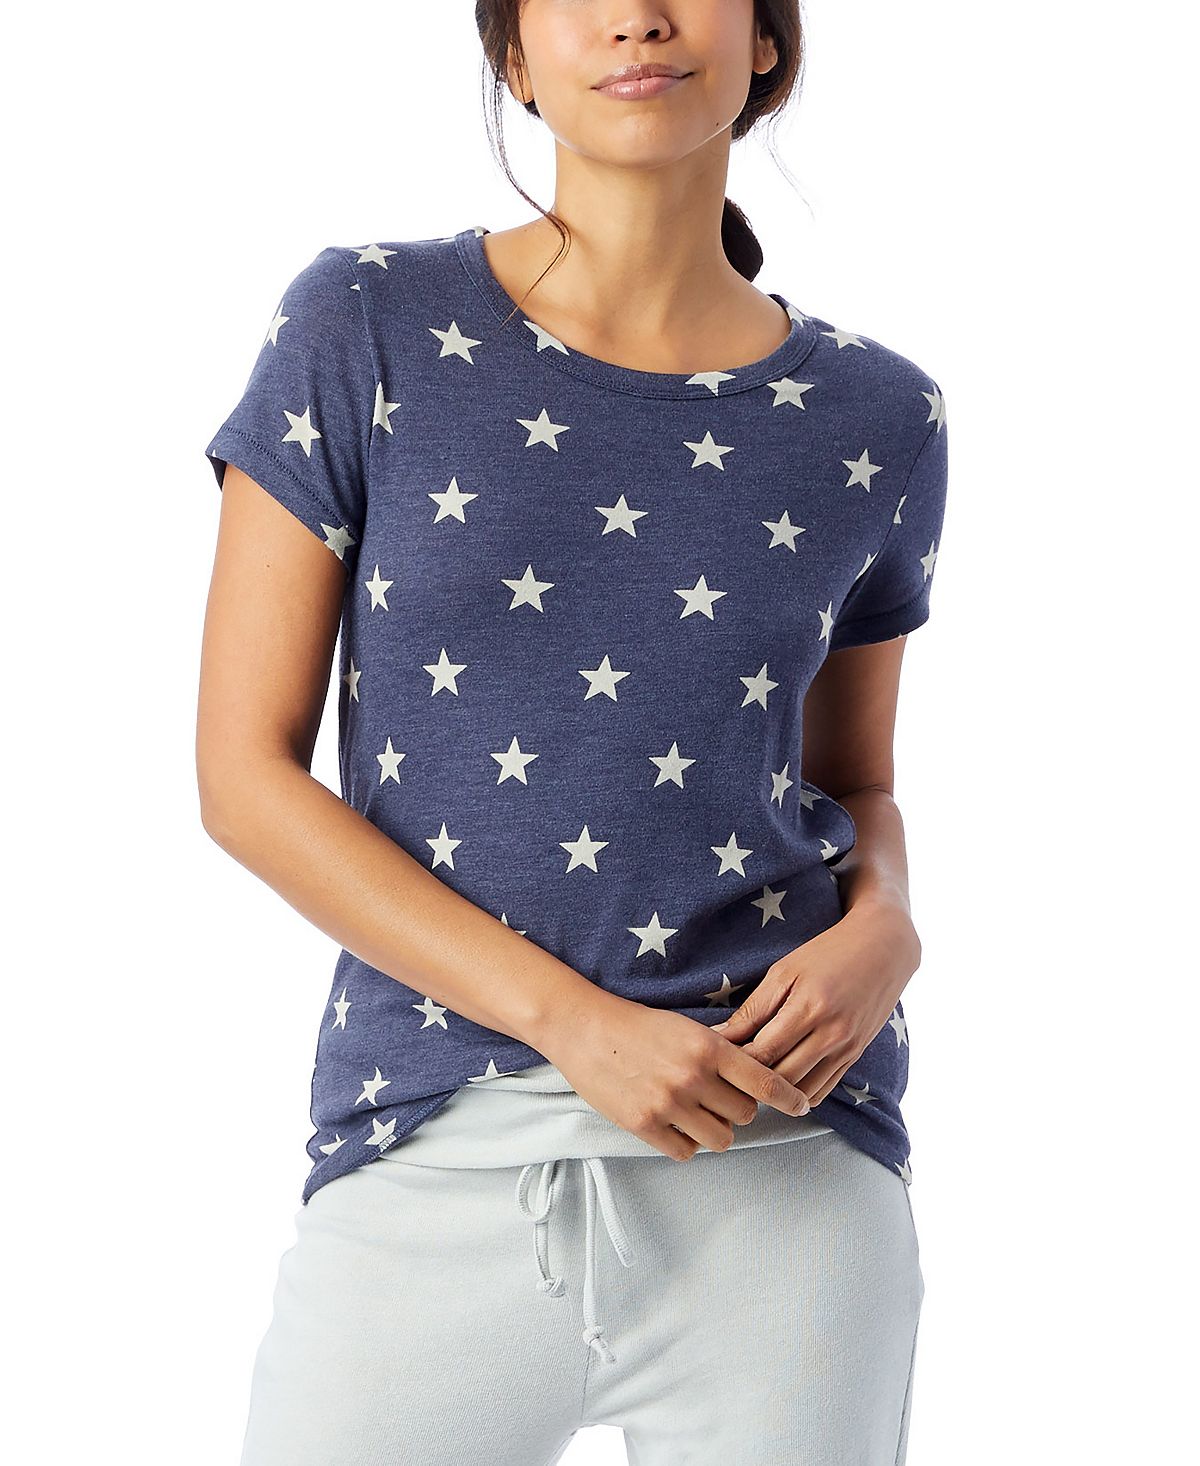 цена Женская футболка ideal с принтом из эко-джерси Macy's, мульти